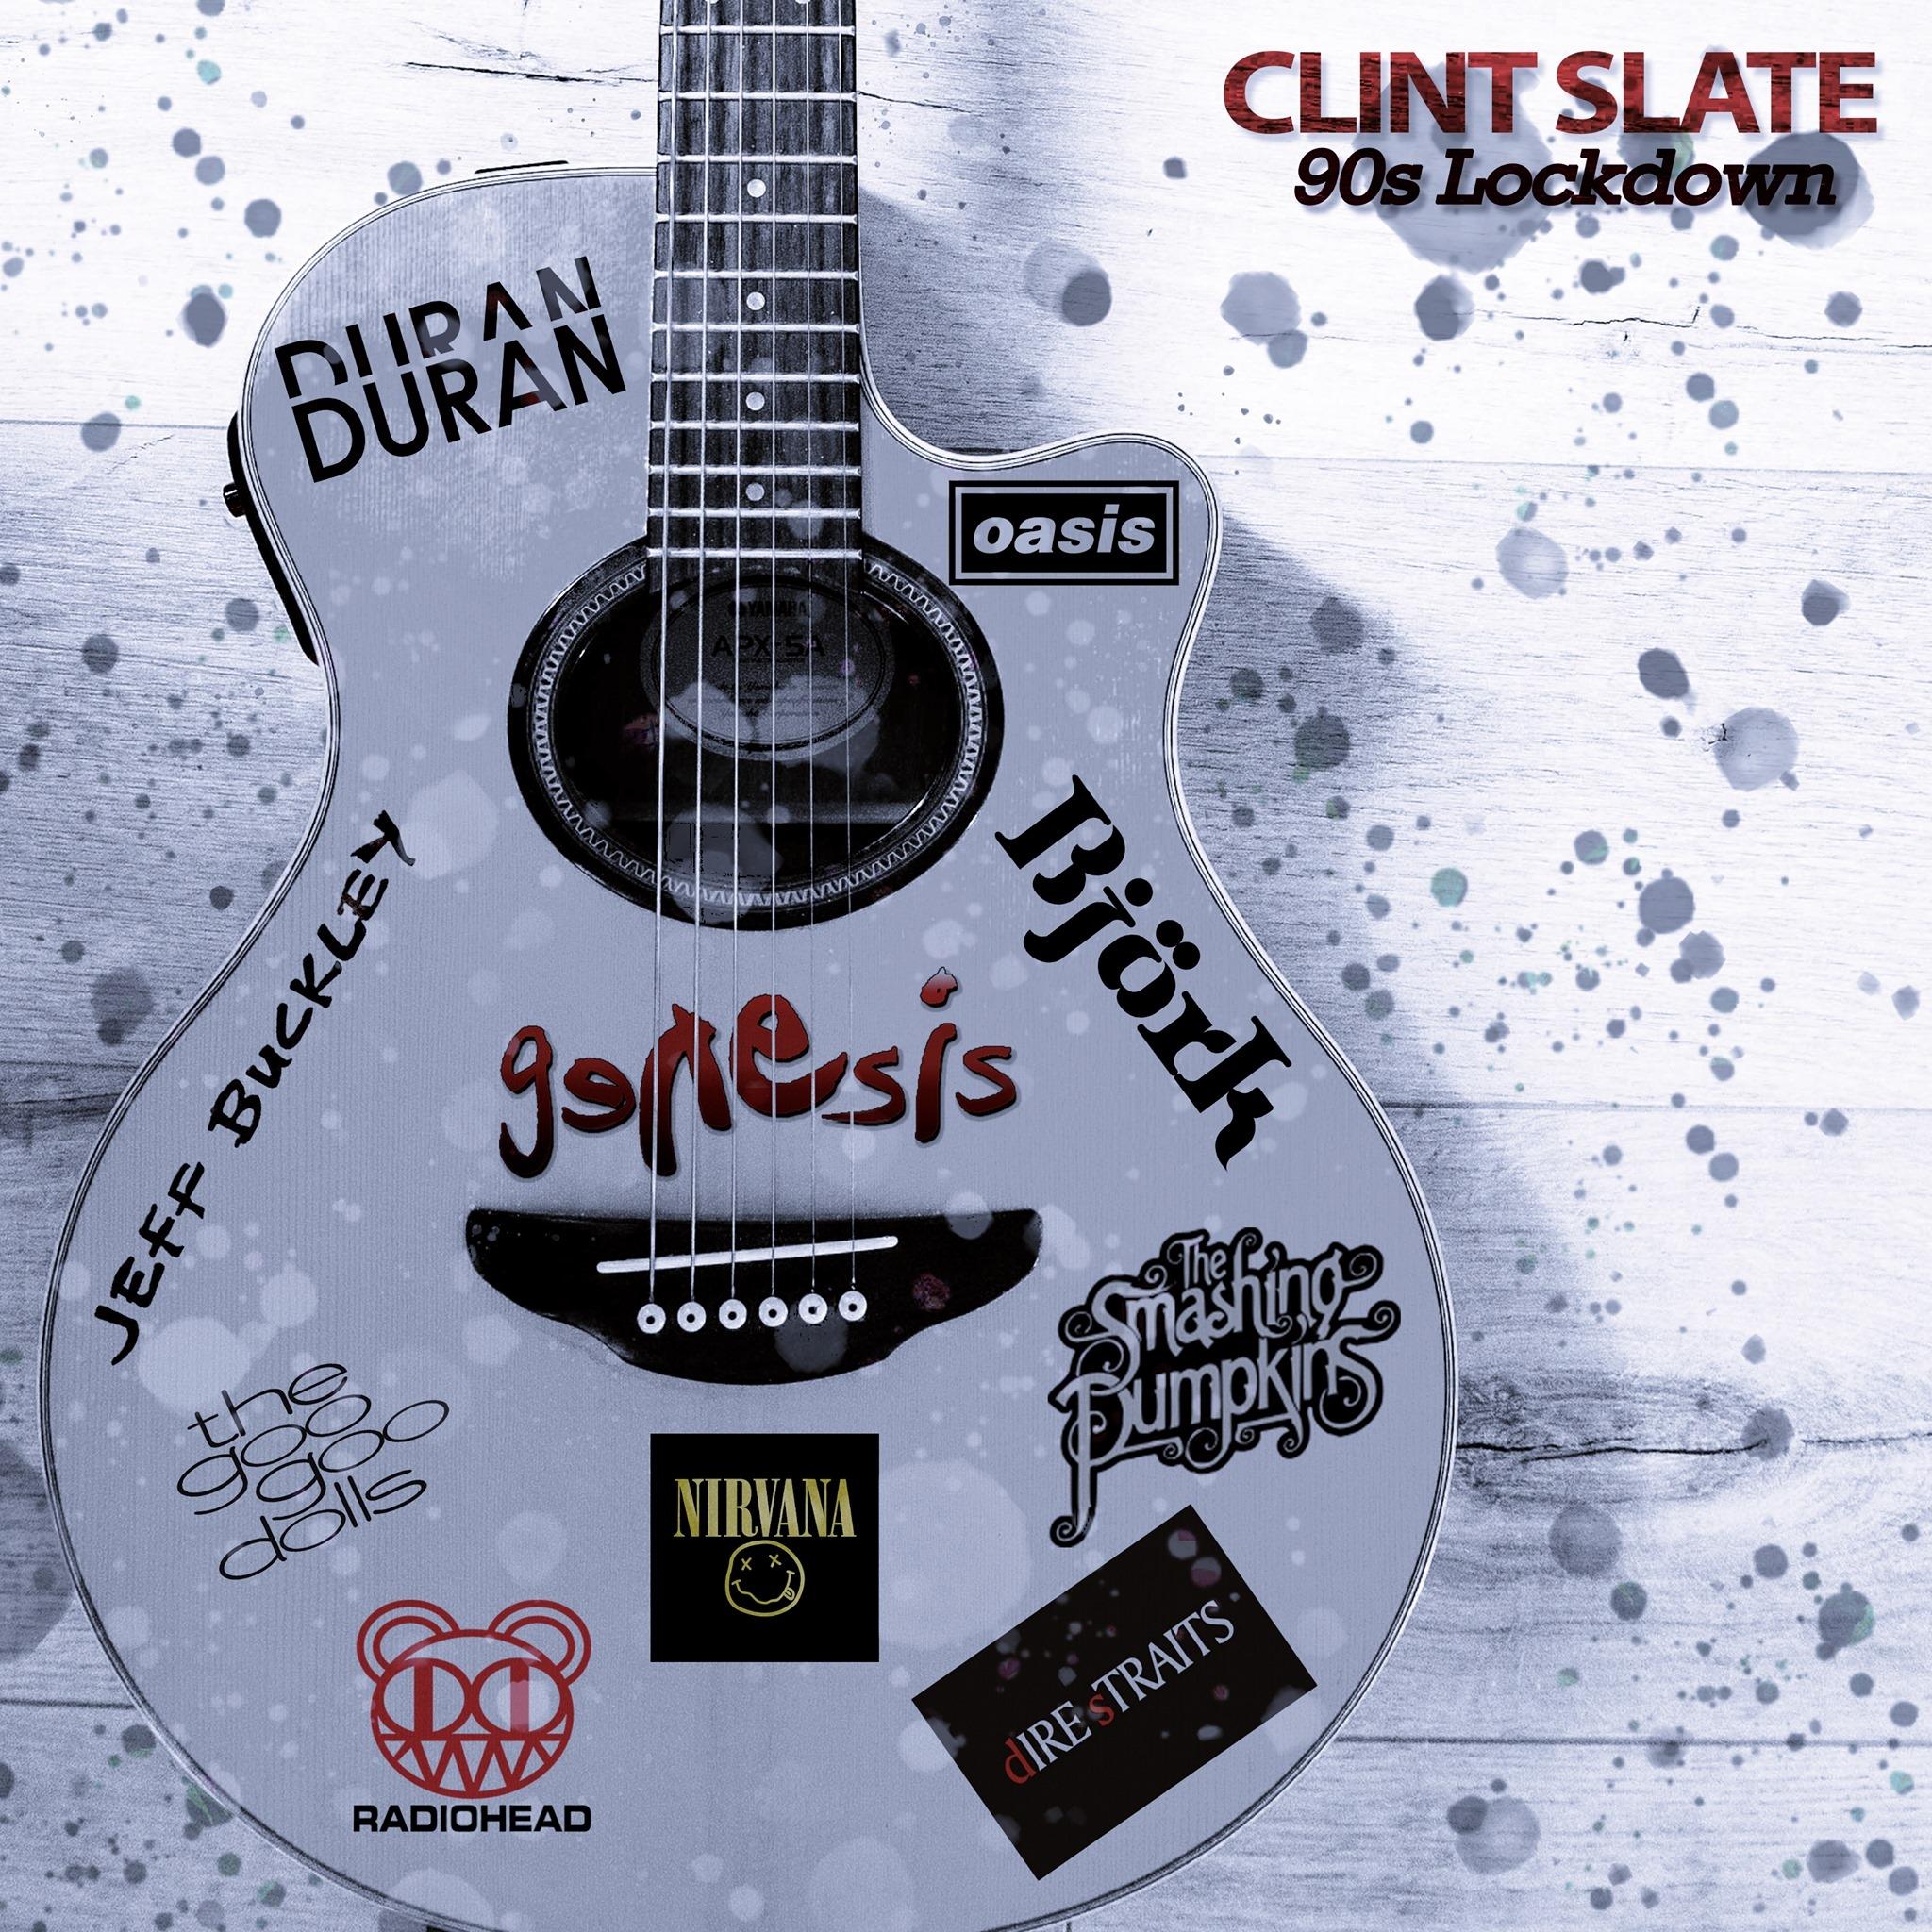 Clint Slate